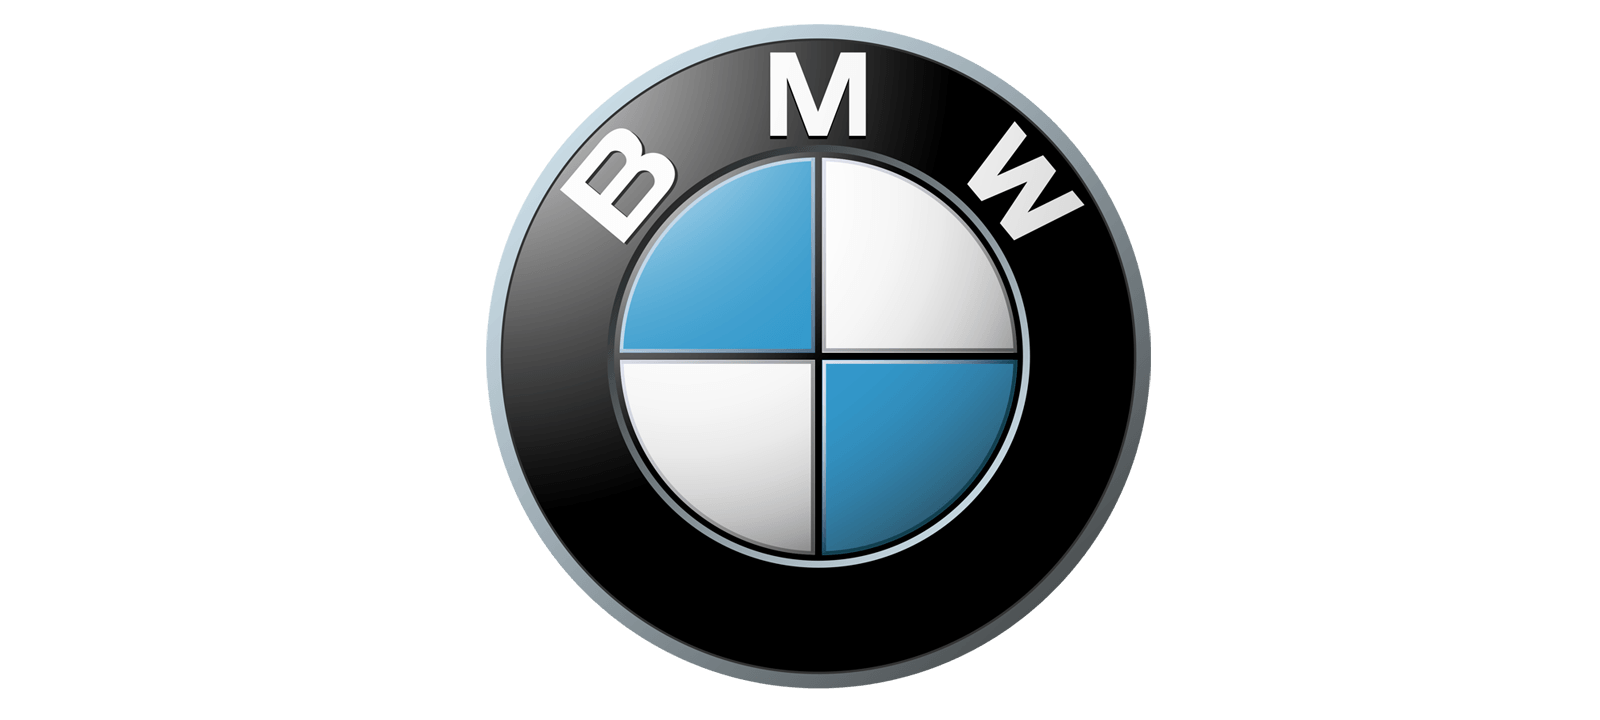 Le Logo - Le logo BMW. Les marques de voitures